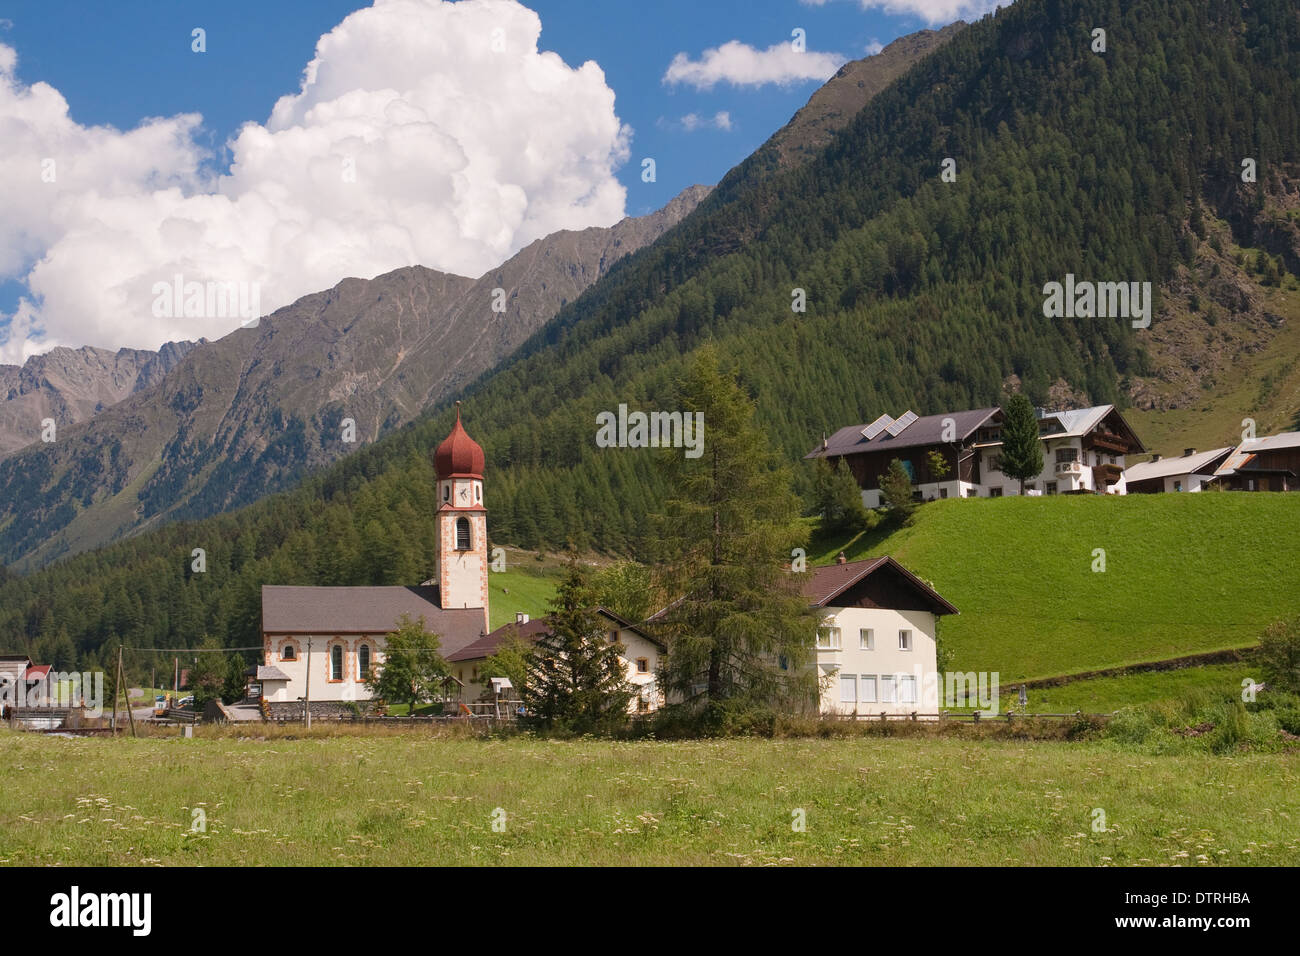 Village of Niederthai in North Tyrol, Austria. Stock Photo